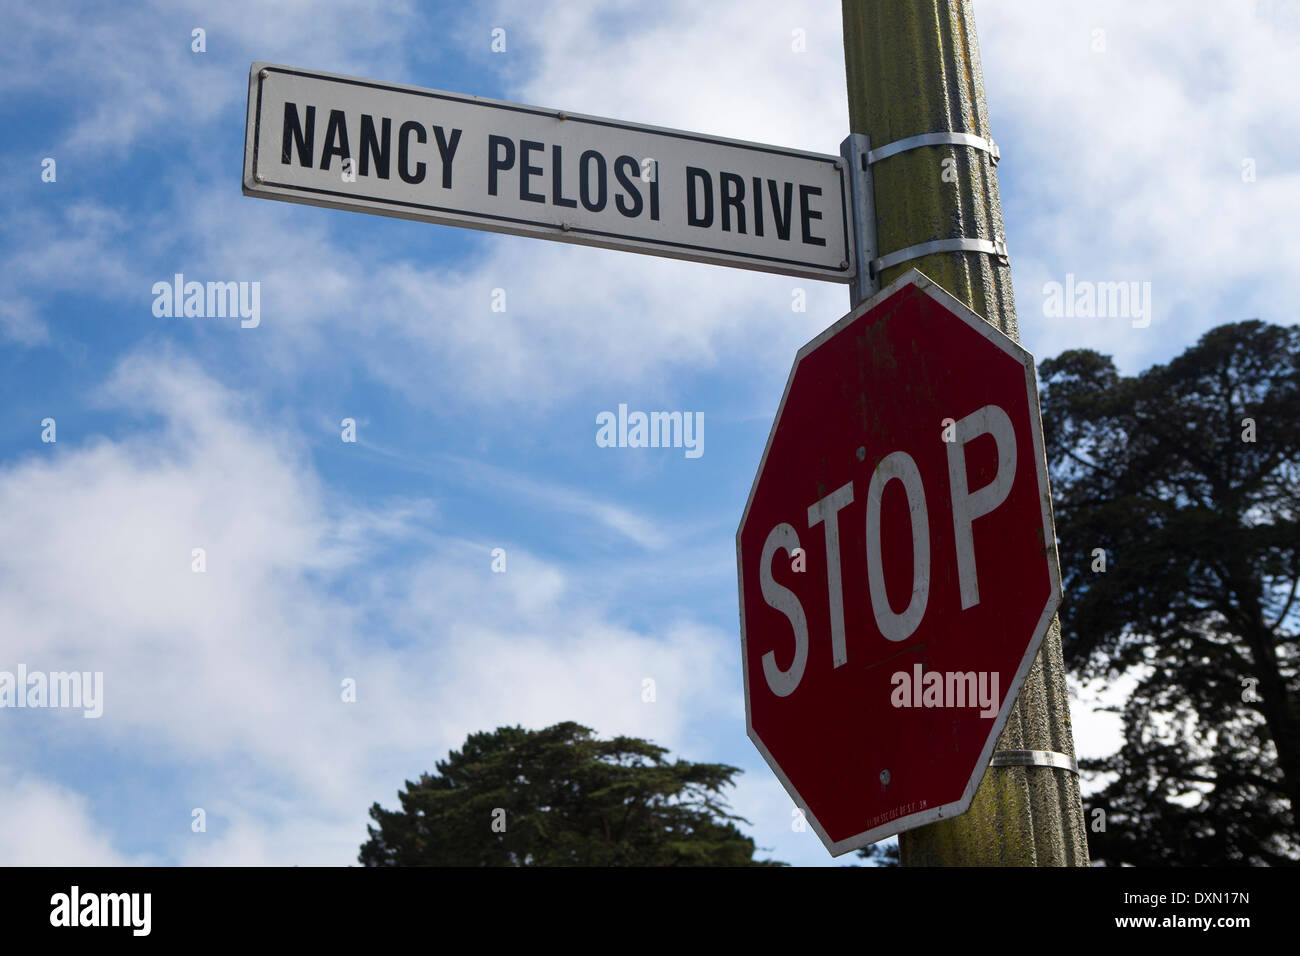 Straßenschild für Nancy Pelosi Laufwerk mit einem Stop-Schild, San Francisco, California, Vereinigte Staaten von Amerika Stockfoto